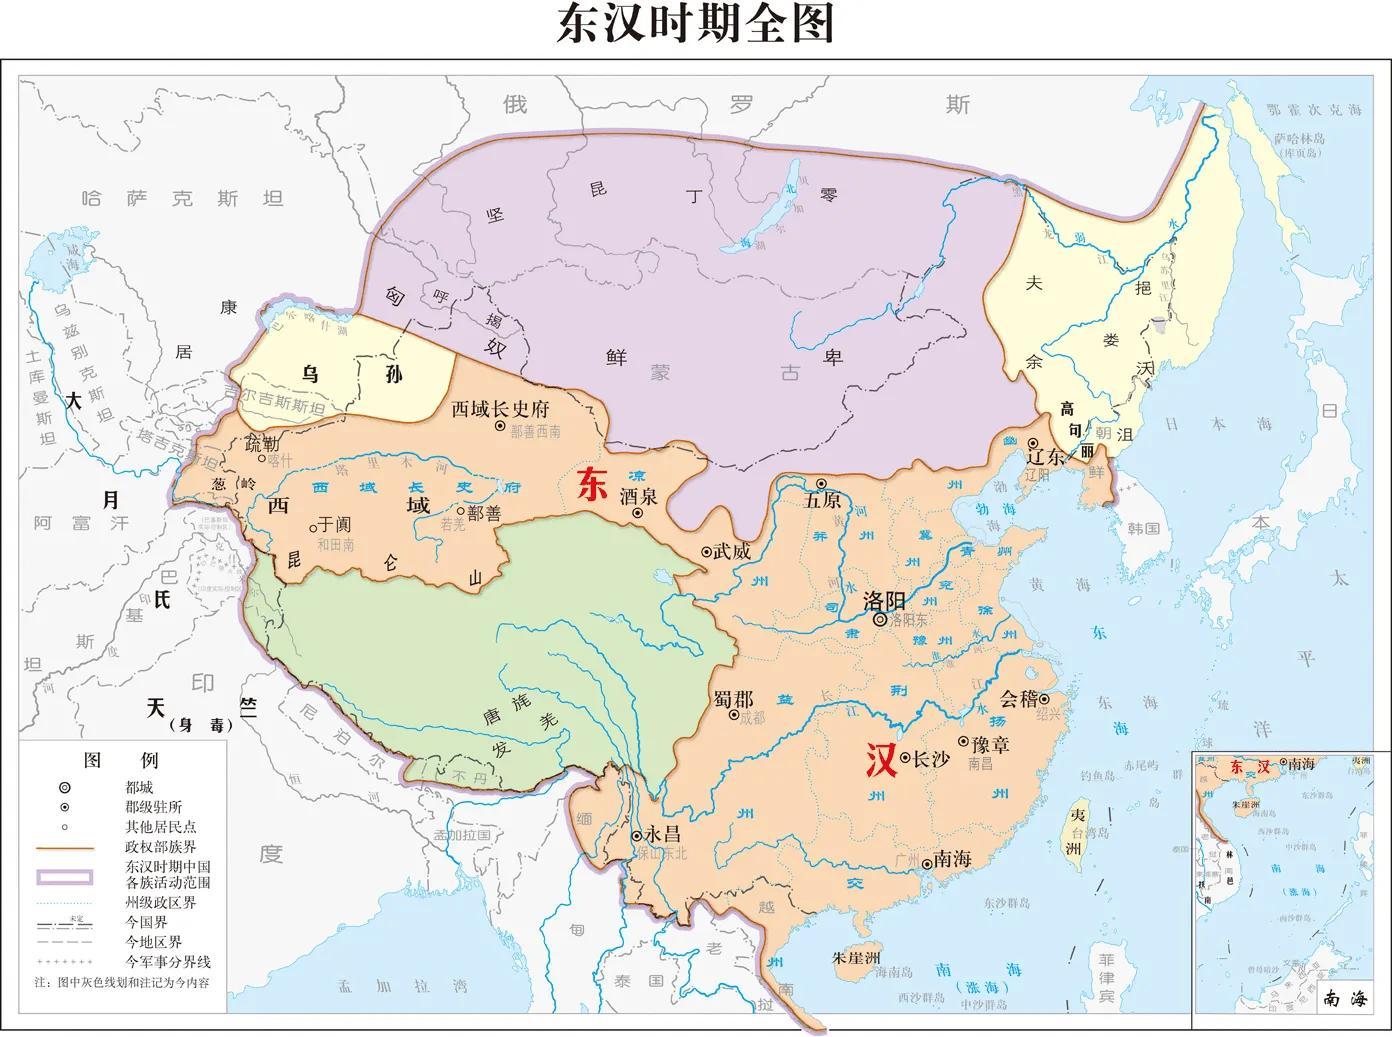 中国陆地面积居世界第几?